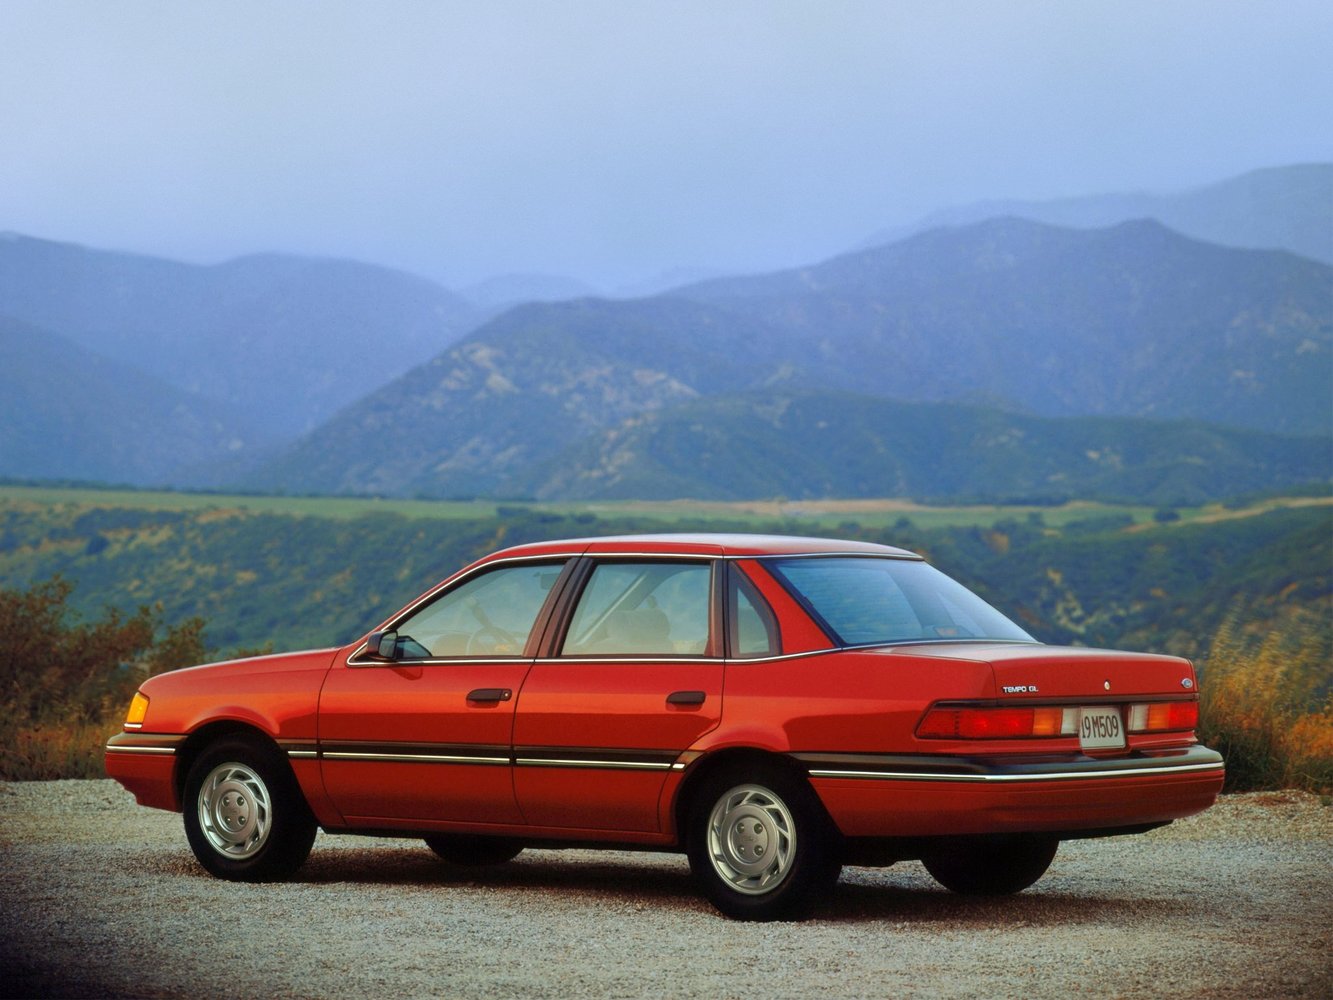 седан Ford Tempo 1984 - 1995г выпуска модификация 2.0 AT (52 л.с.)